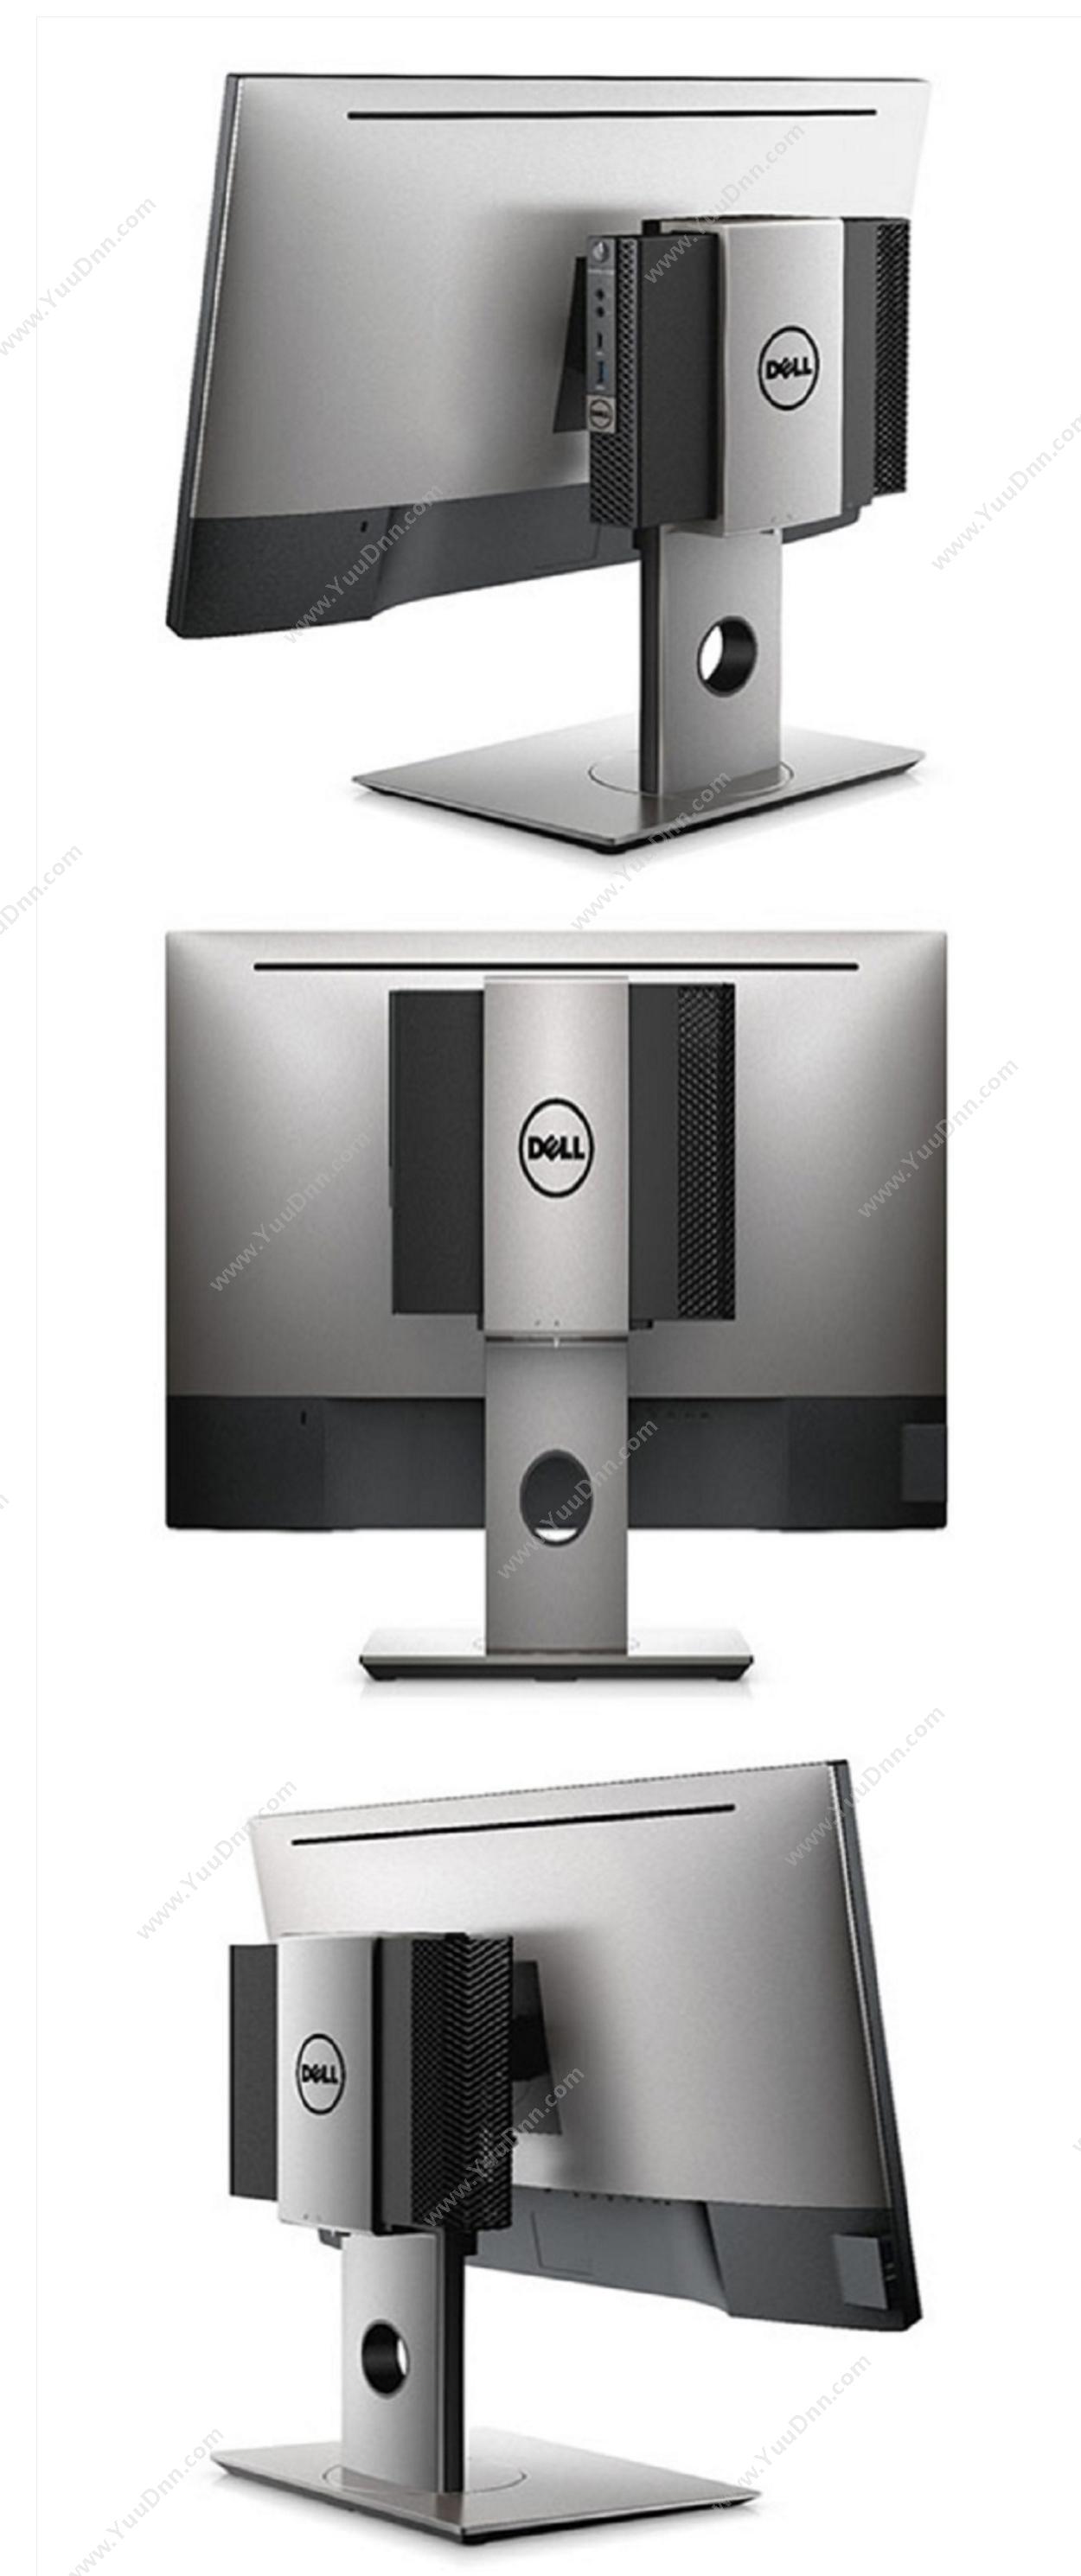 戴尔 Dell OptiPlex 3060 Micro 230262 台式机（i5-8500T/8G/256SSD+1T/P2418Hzm专业显示器带隐藏摄像头/微型机一体支架） 台式一体机